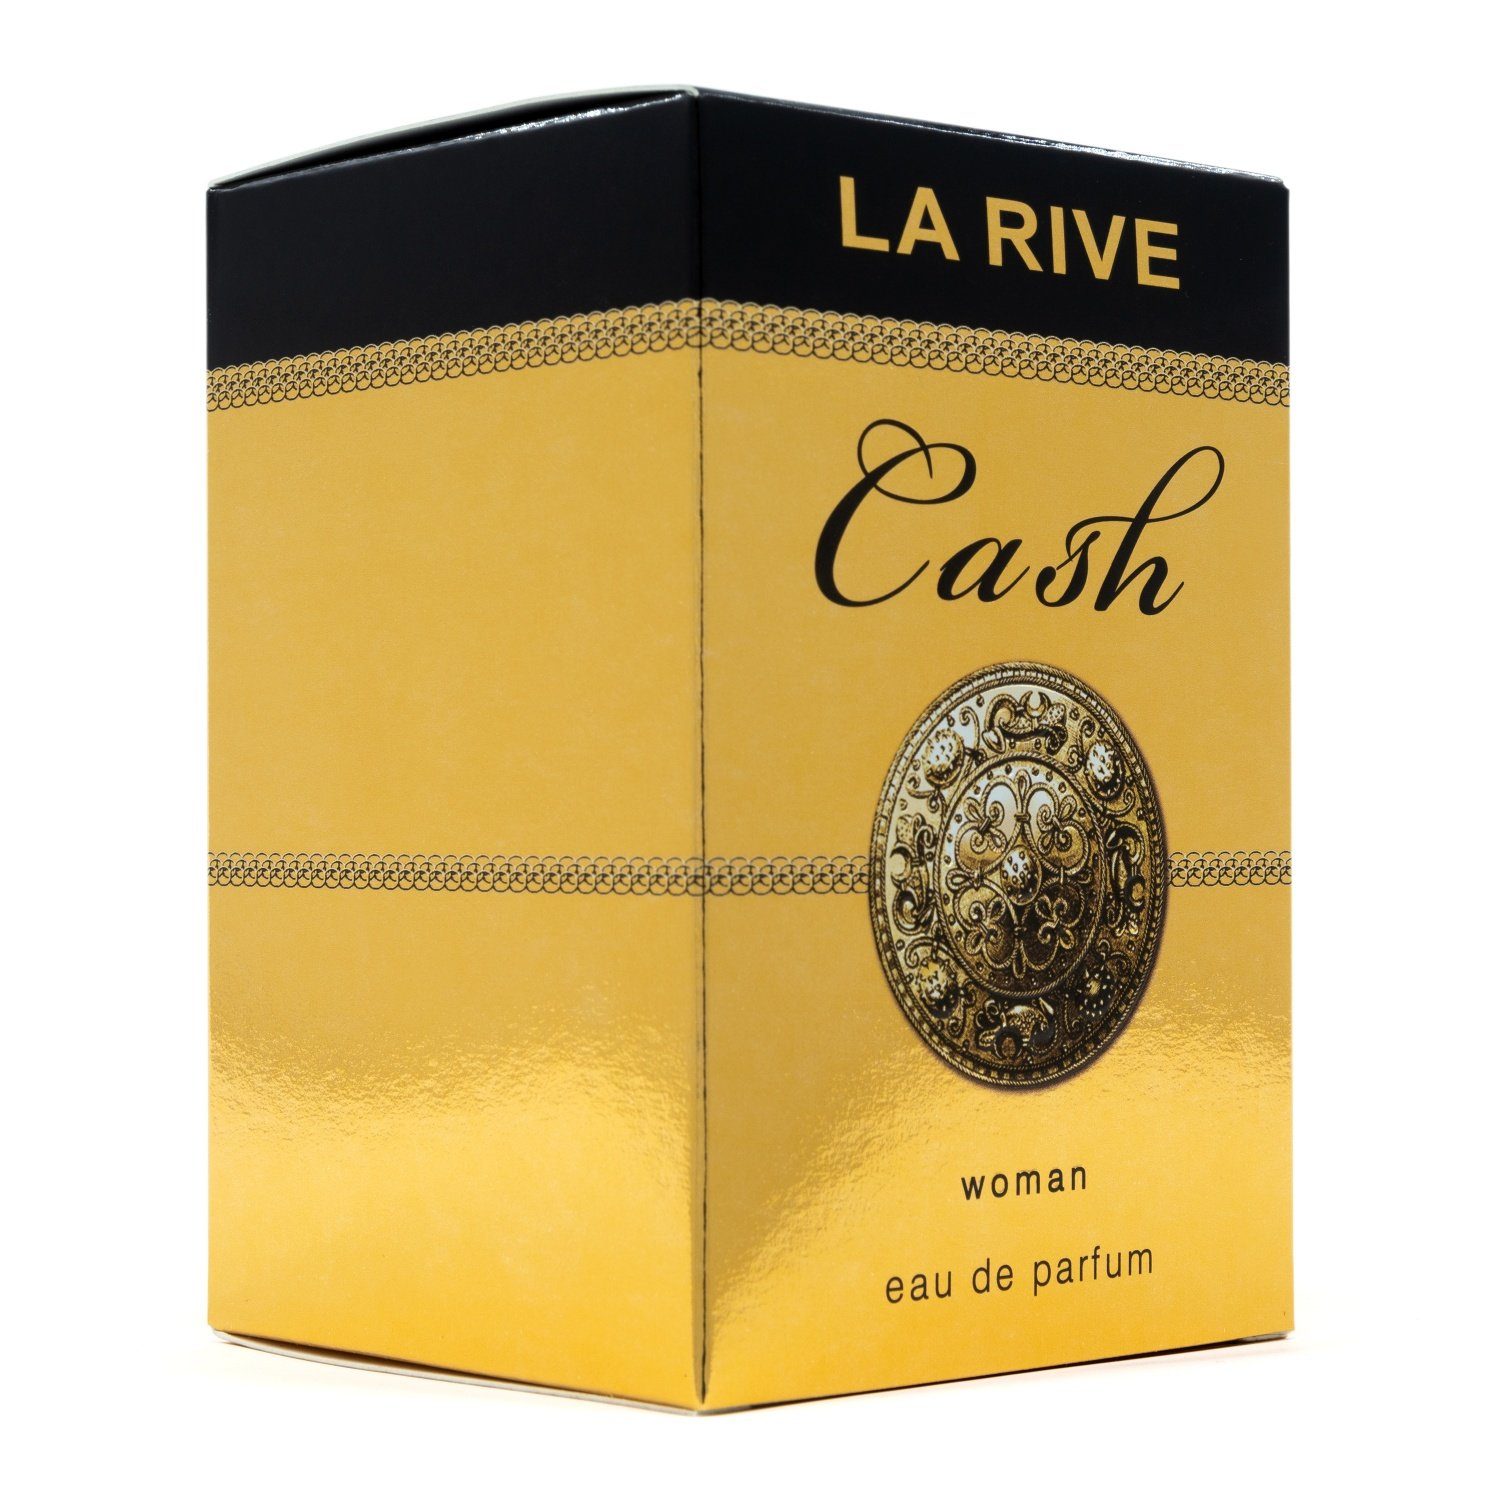 de Parfum Eau - Woman La Rive ml Cash - LA 90 ml, de Parfum RIVE 90 Eau